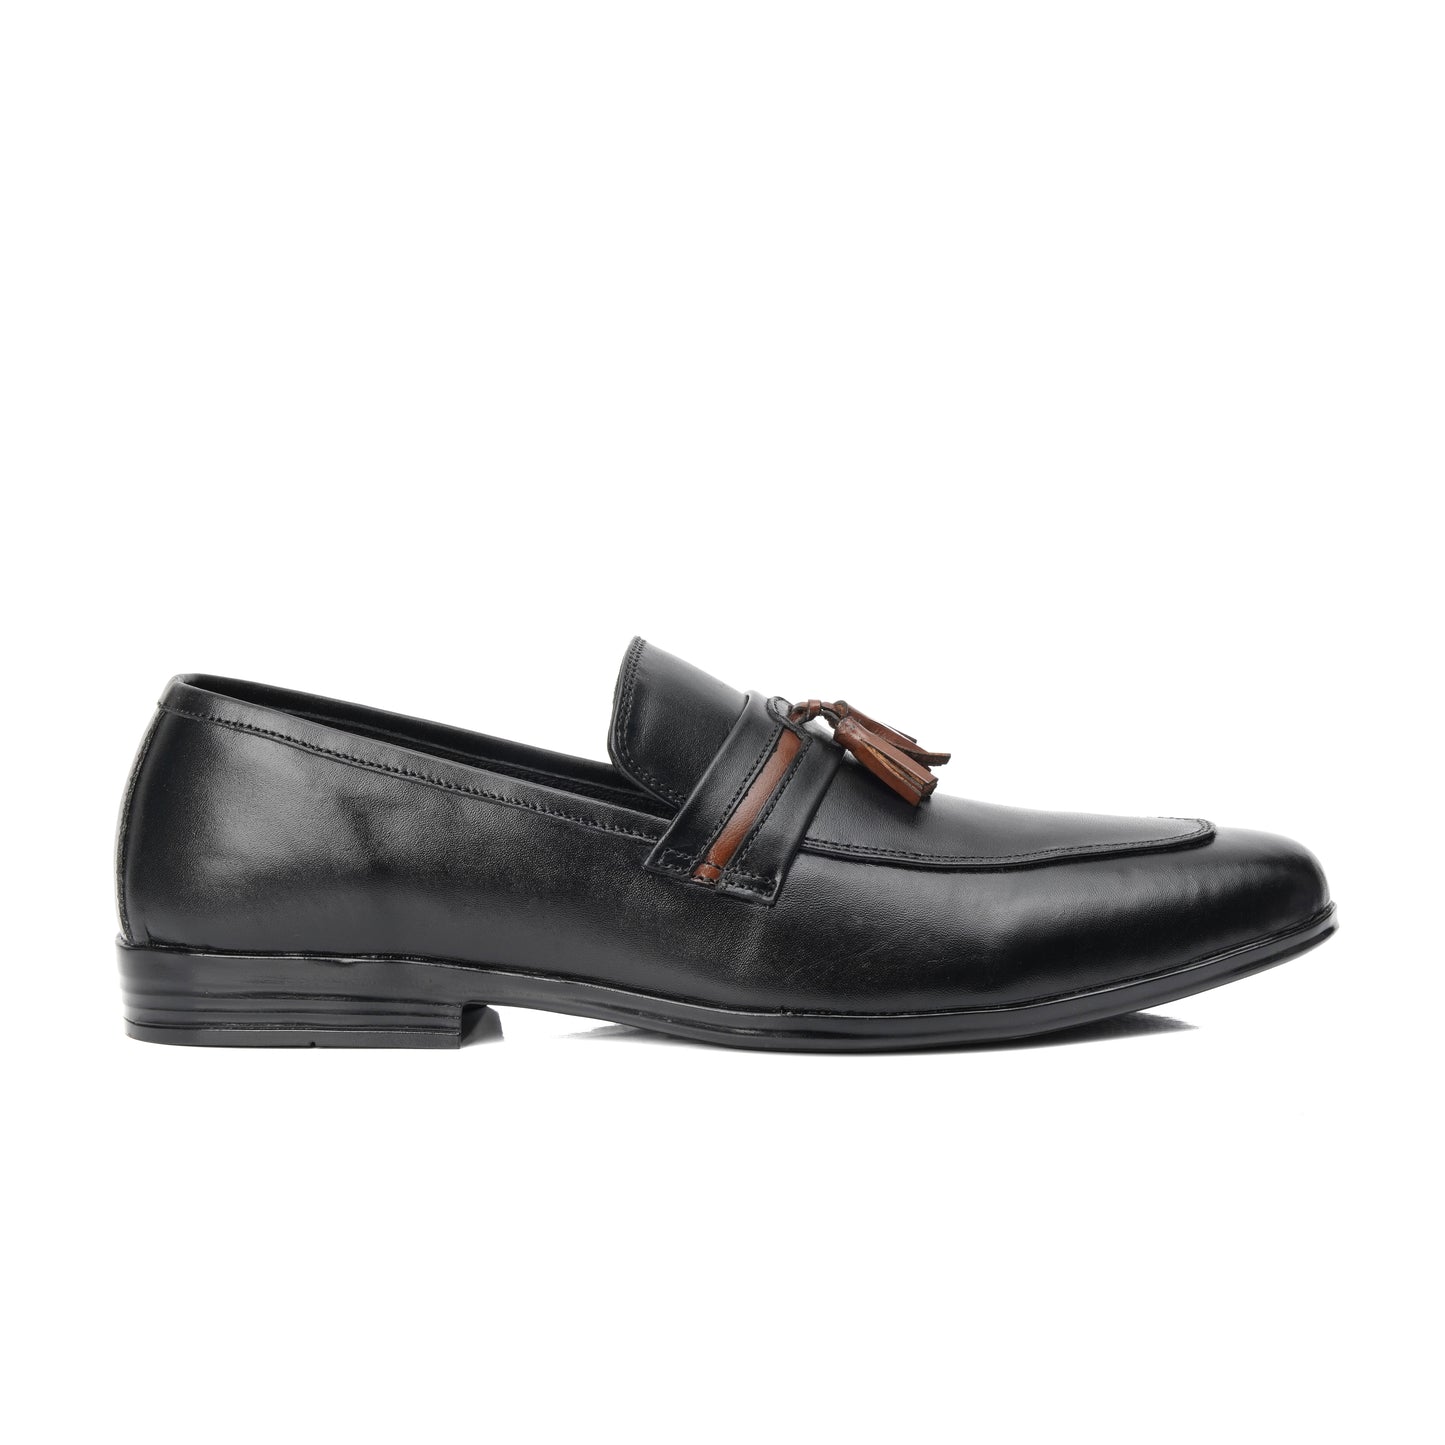 803-Black Royal Tassel loafer